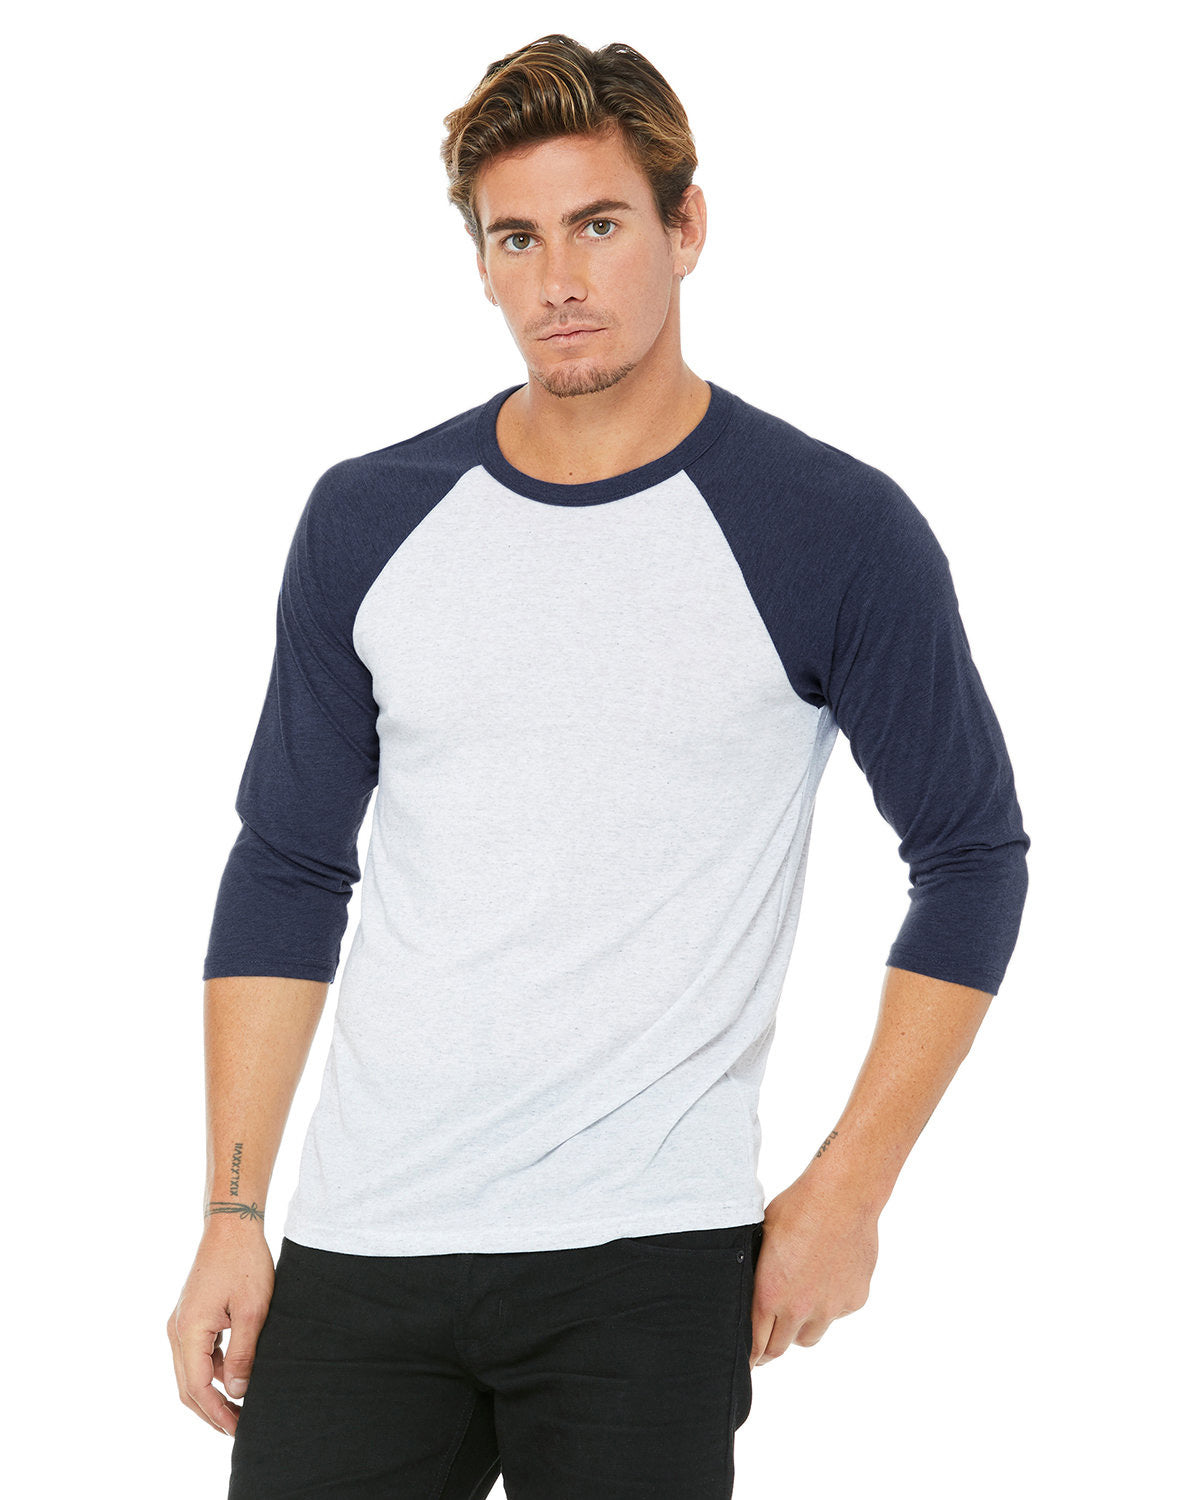 Baseball T-Shirt Men Raglan Sleeves | Blue & White – Perfect TShirt Co